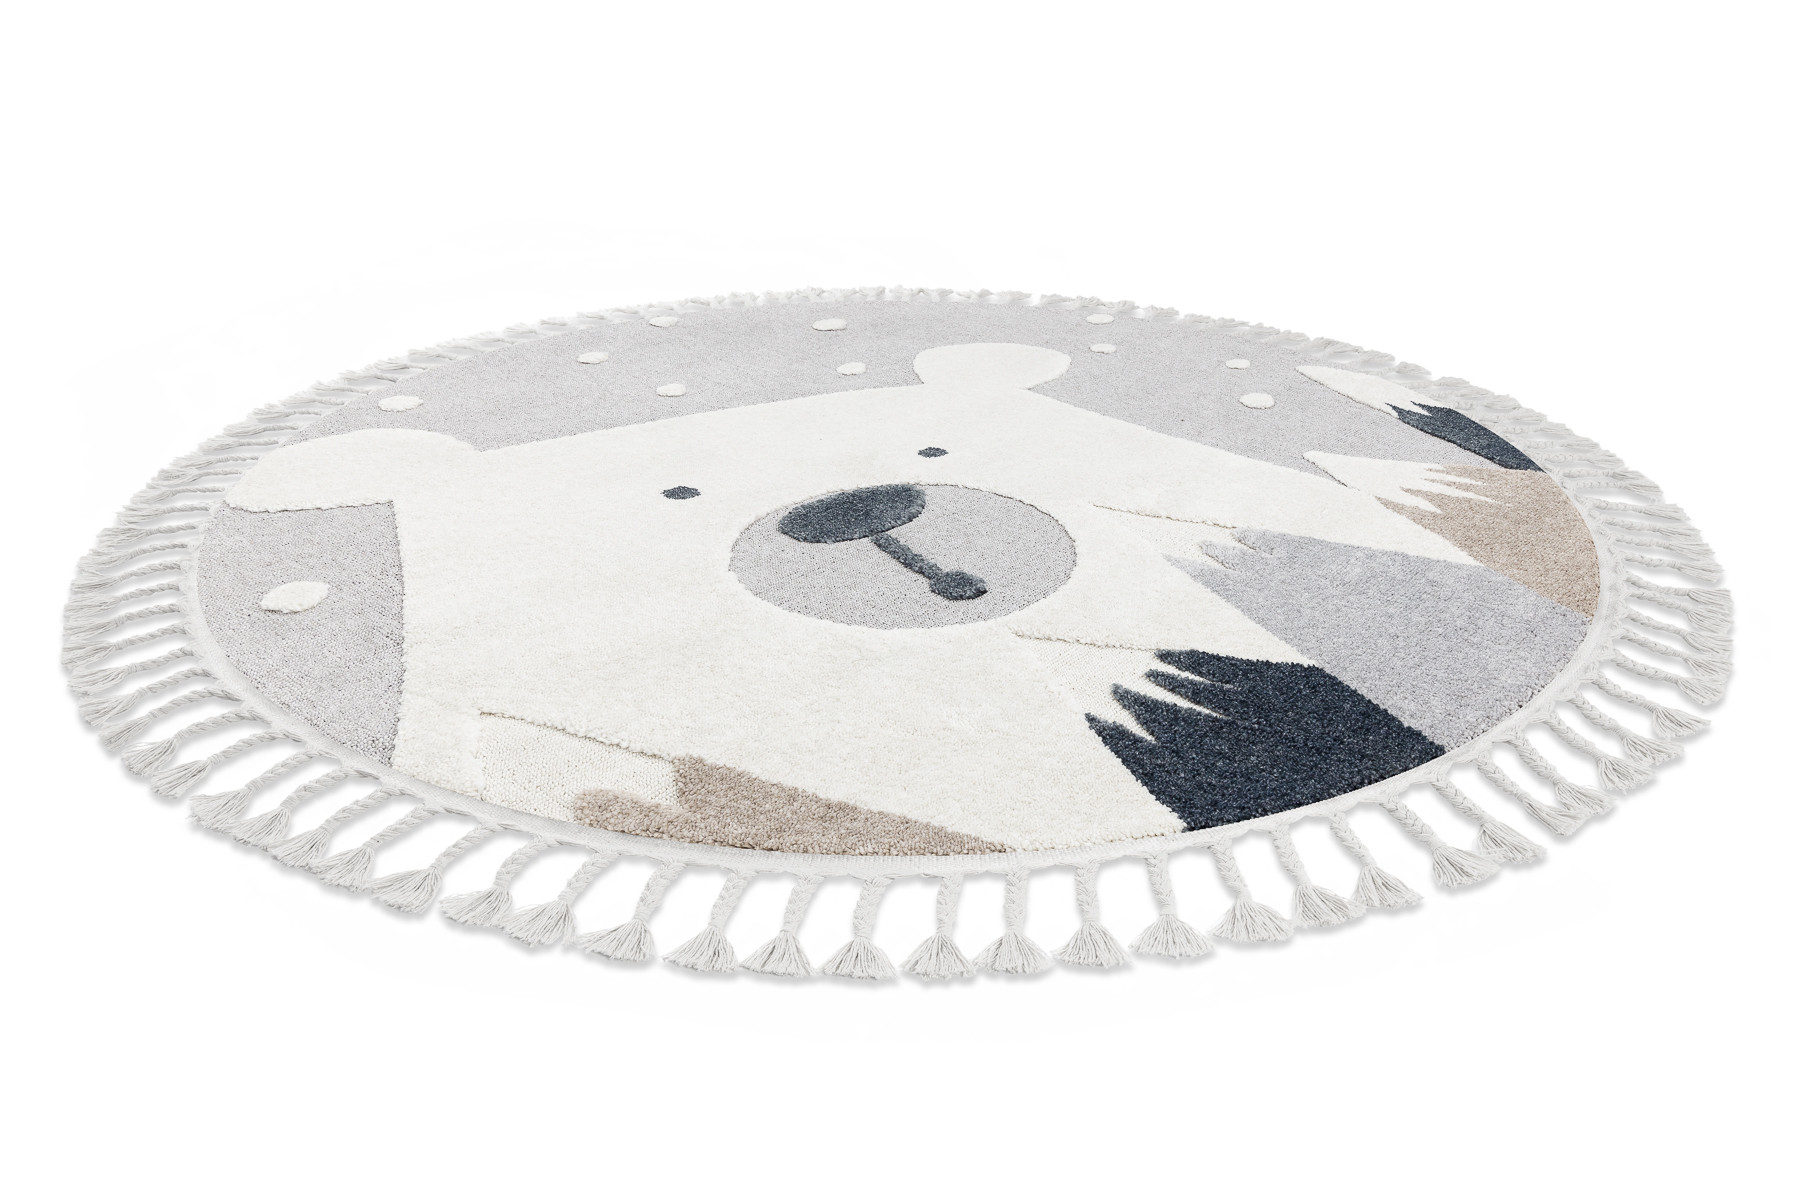 Detský koberec YOYO EY81 kruh sivý / biely - medveď, hory